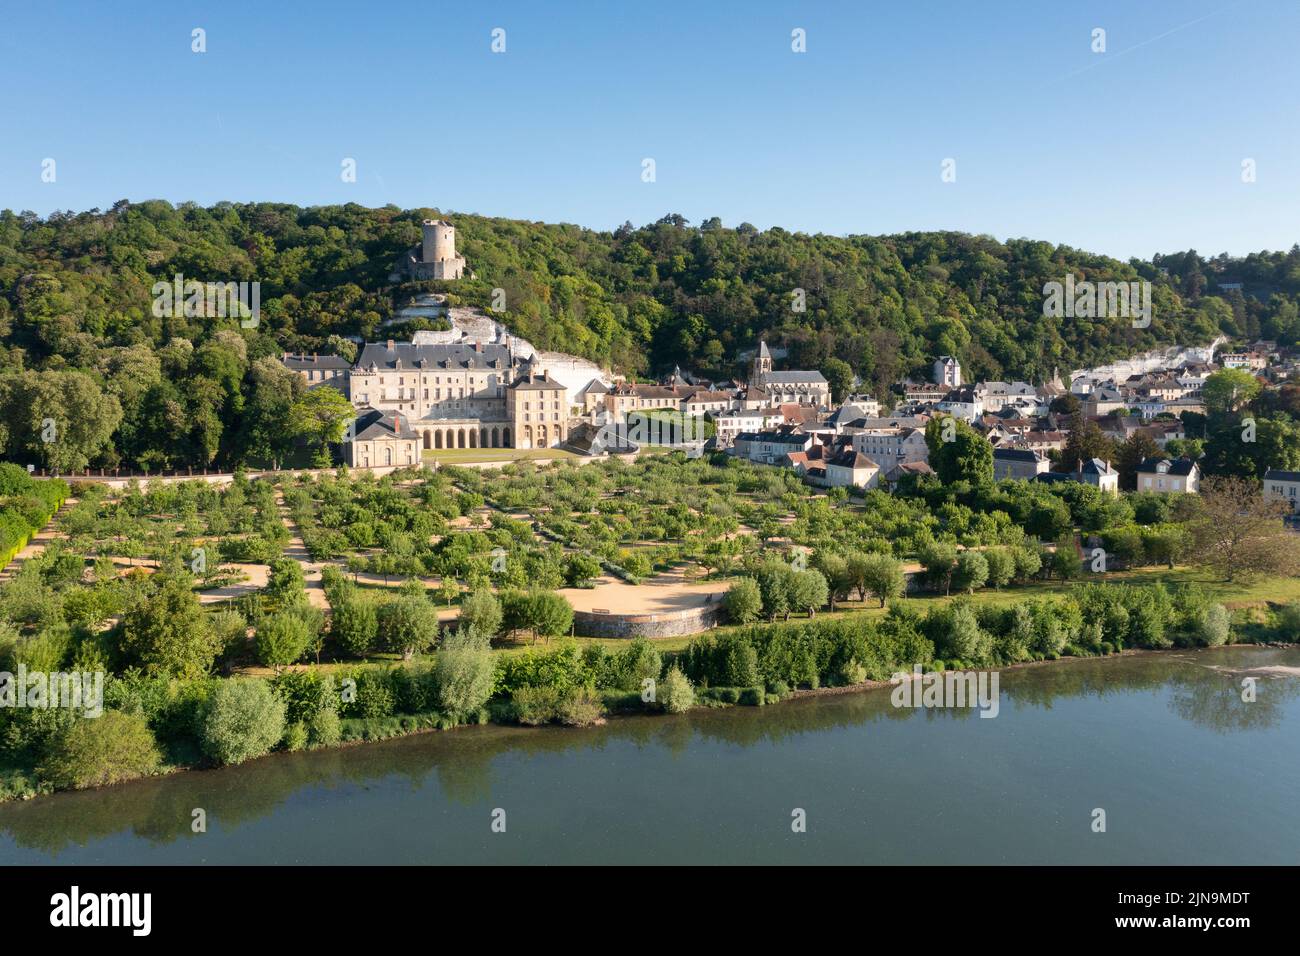 Frankreich, Val d'Oise, Vexin Francais Natural Regional Park, La Roche Guyon, bezeichnet als Les Plus Beaux Villages de France (die schönsten Dörfer von F Stockfoto